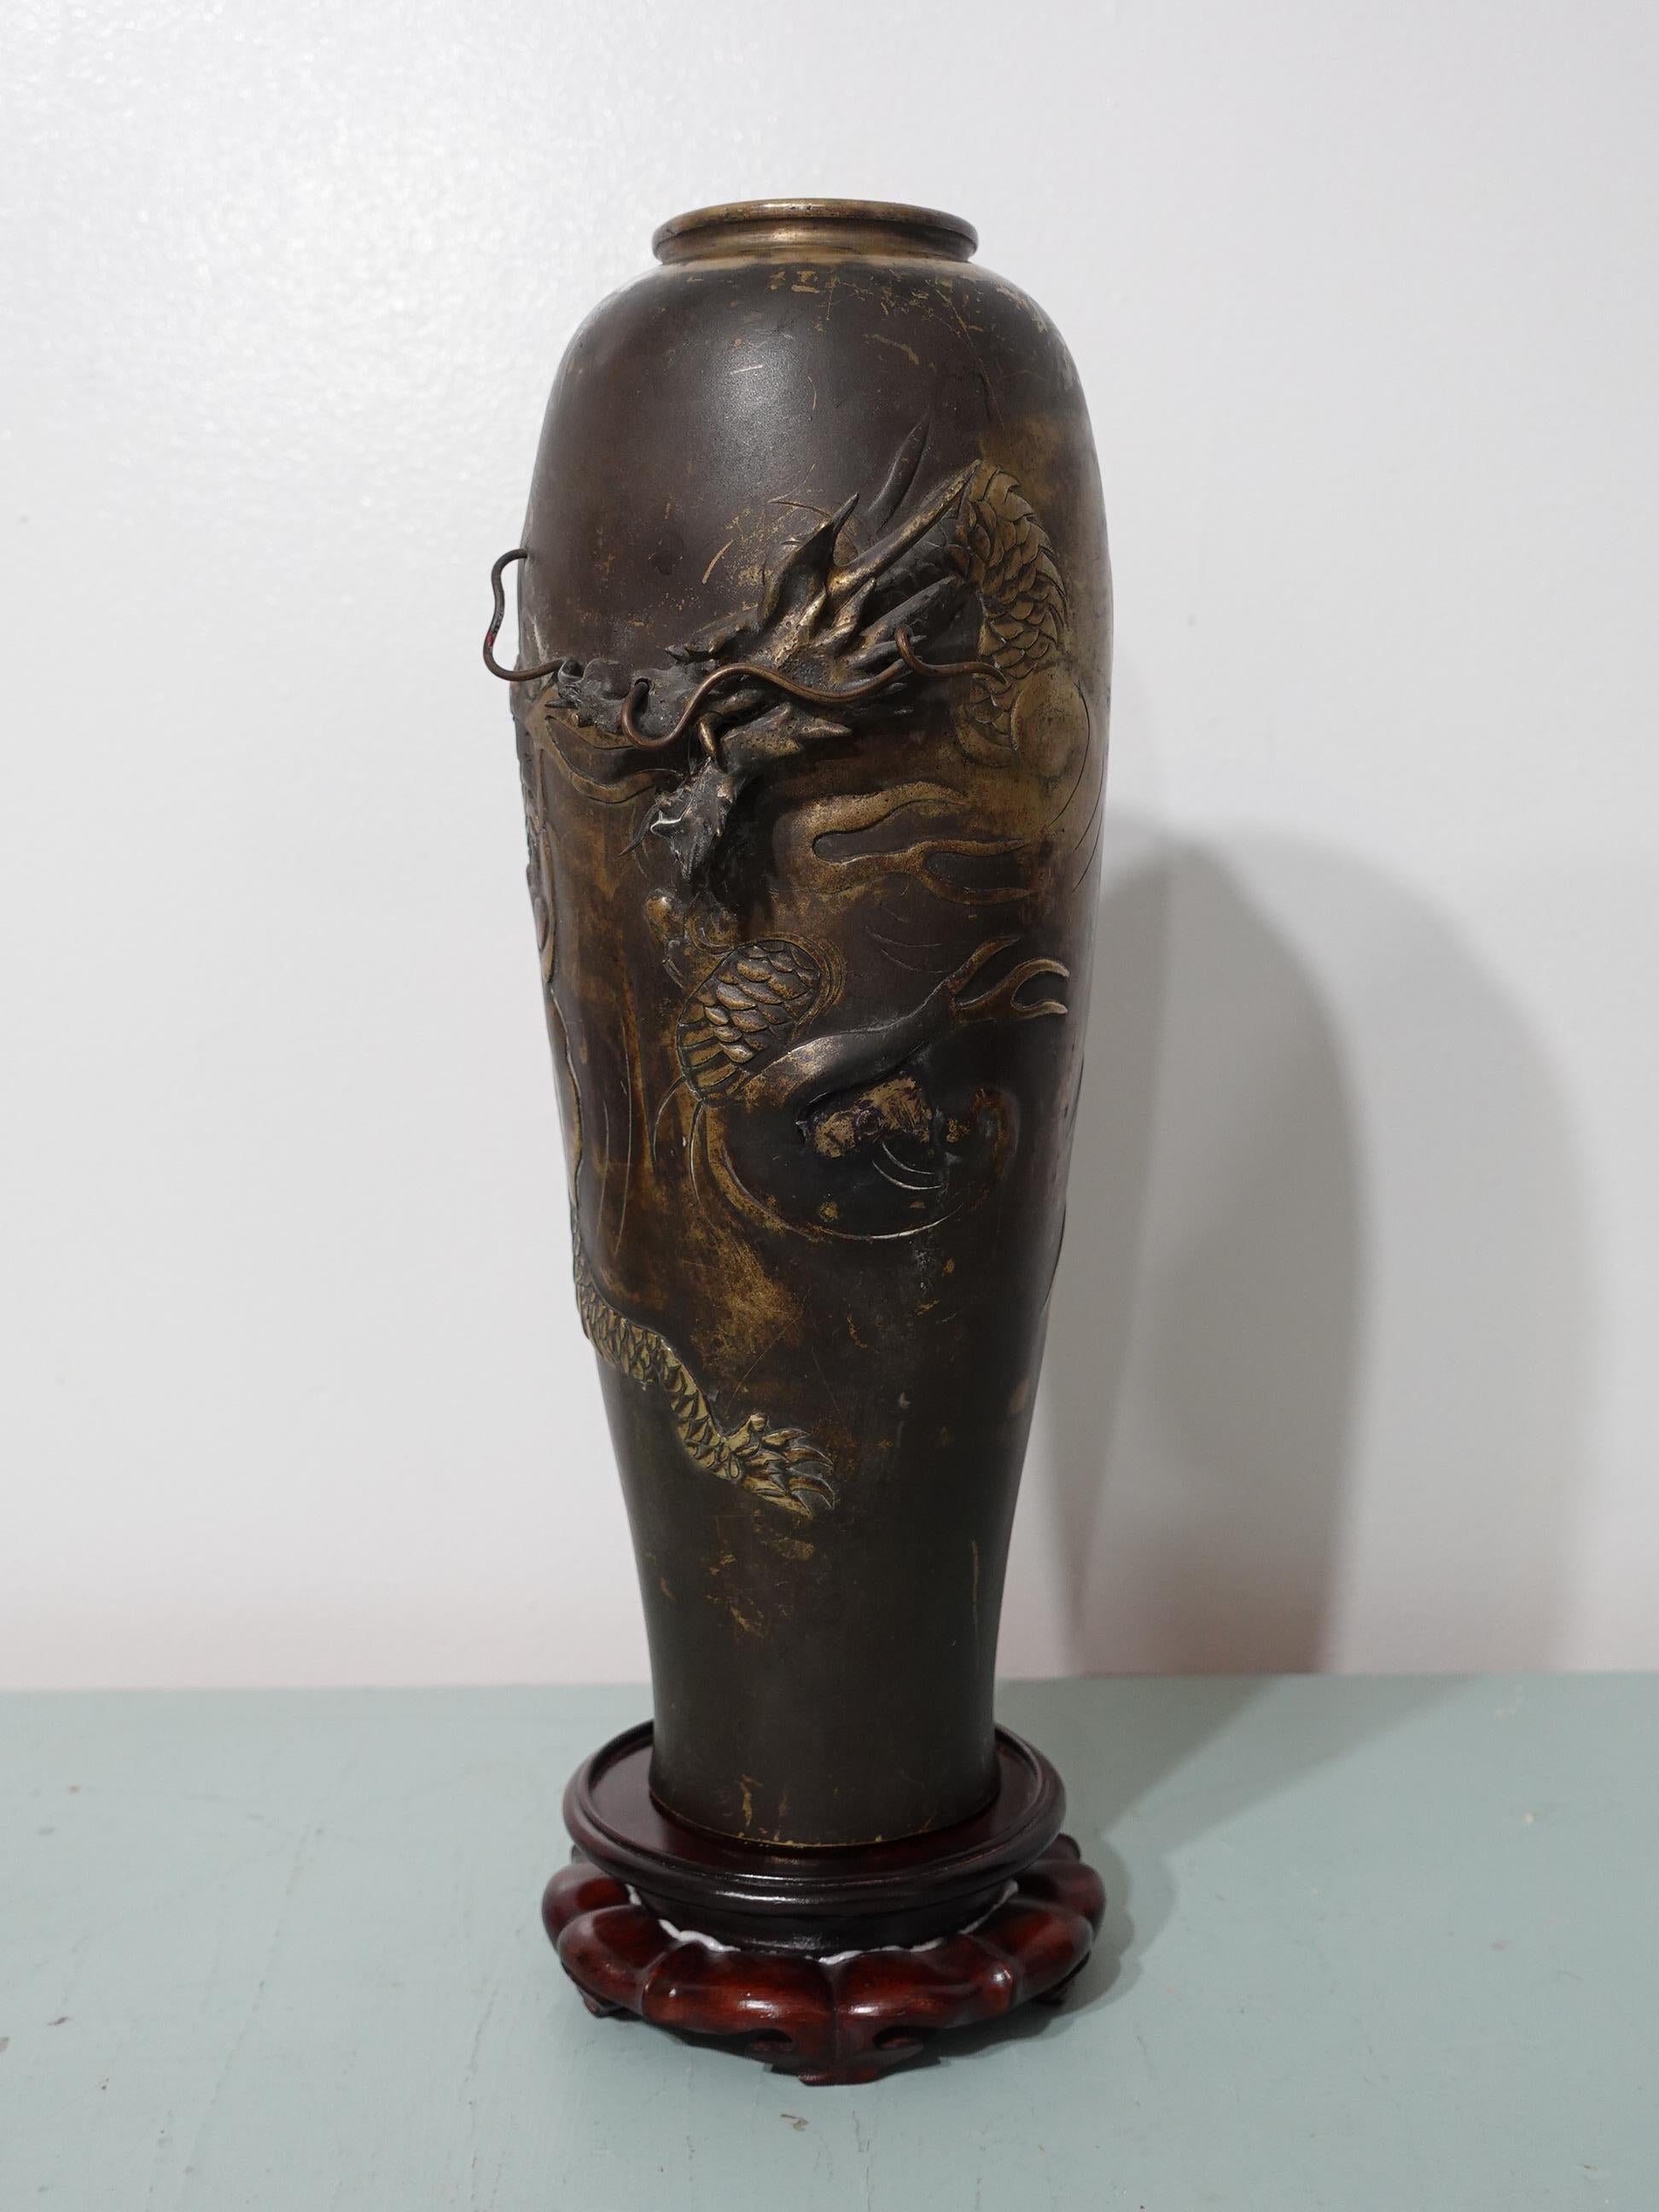 Un beau vase antique japonais en bronze sculpté en relief avec un support en bois dur.
Une tête de dragon en relief complexe, fabriquée à la main, avec des antennes de dragon qui entrent et sortent du corps du vase.
Je pense que le vase a été